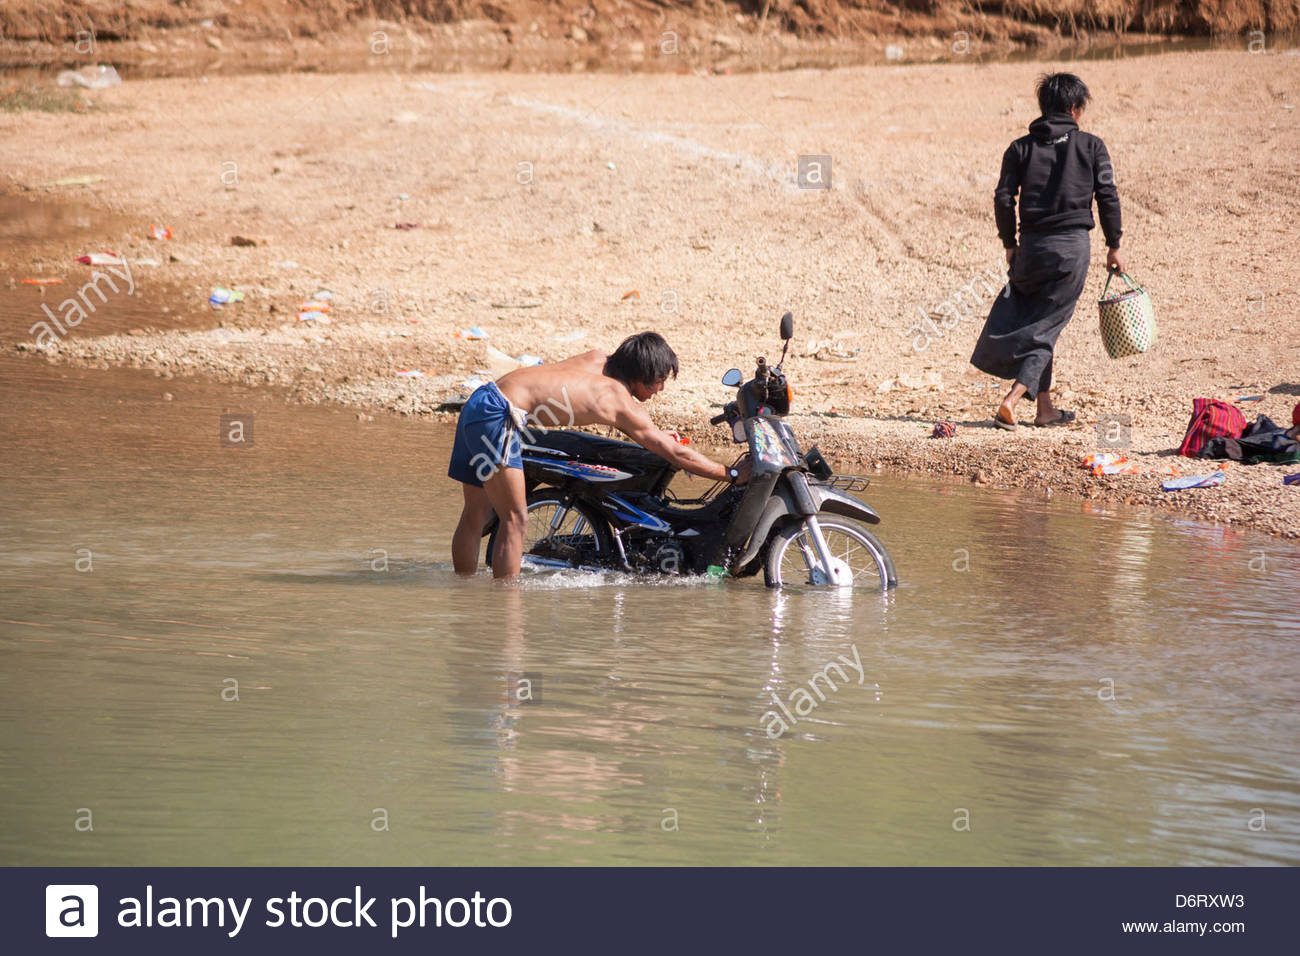 man-washing-motorcycle-in-inle-lake-indein-village-near-taunggyi-shan-D6RXW3.jpg